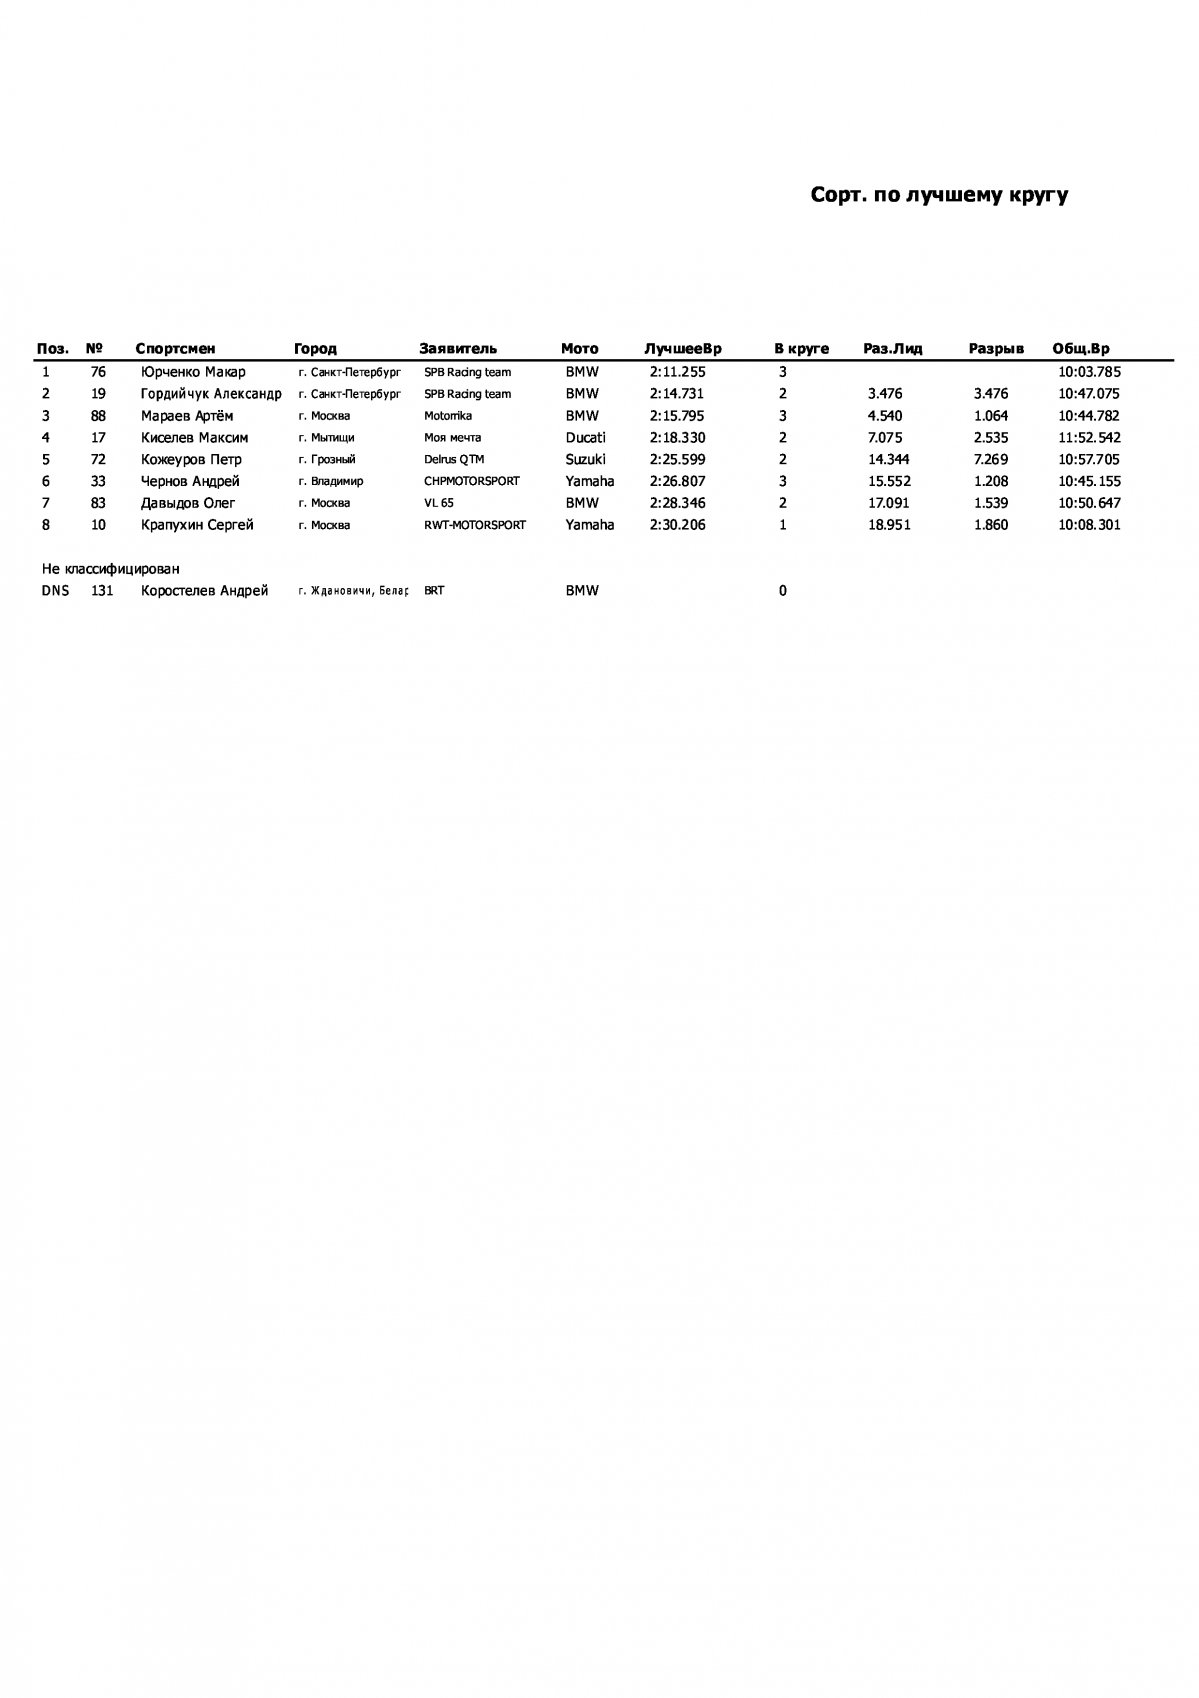 Результаты квалификации 3 этапа чемпионата России, класс Superbike (23/07/2022)